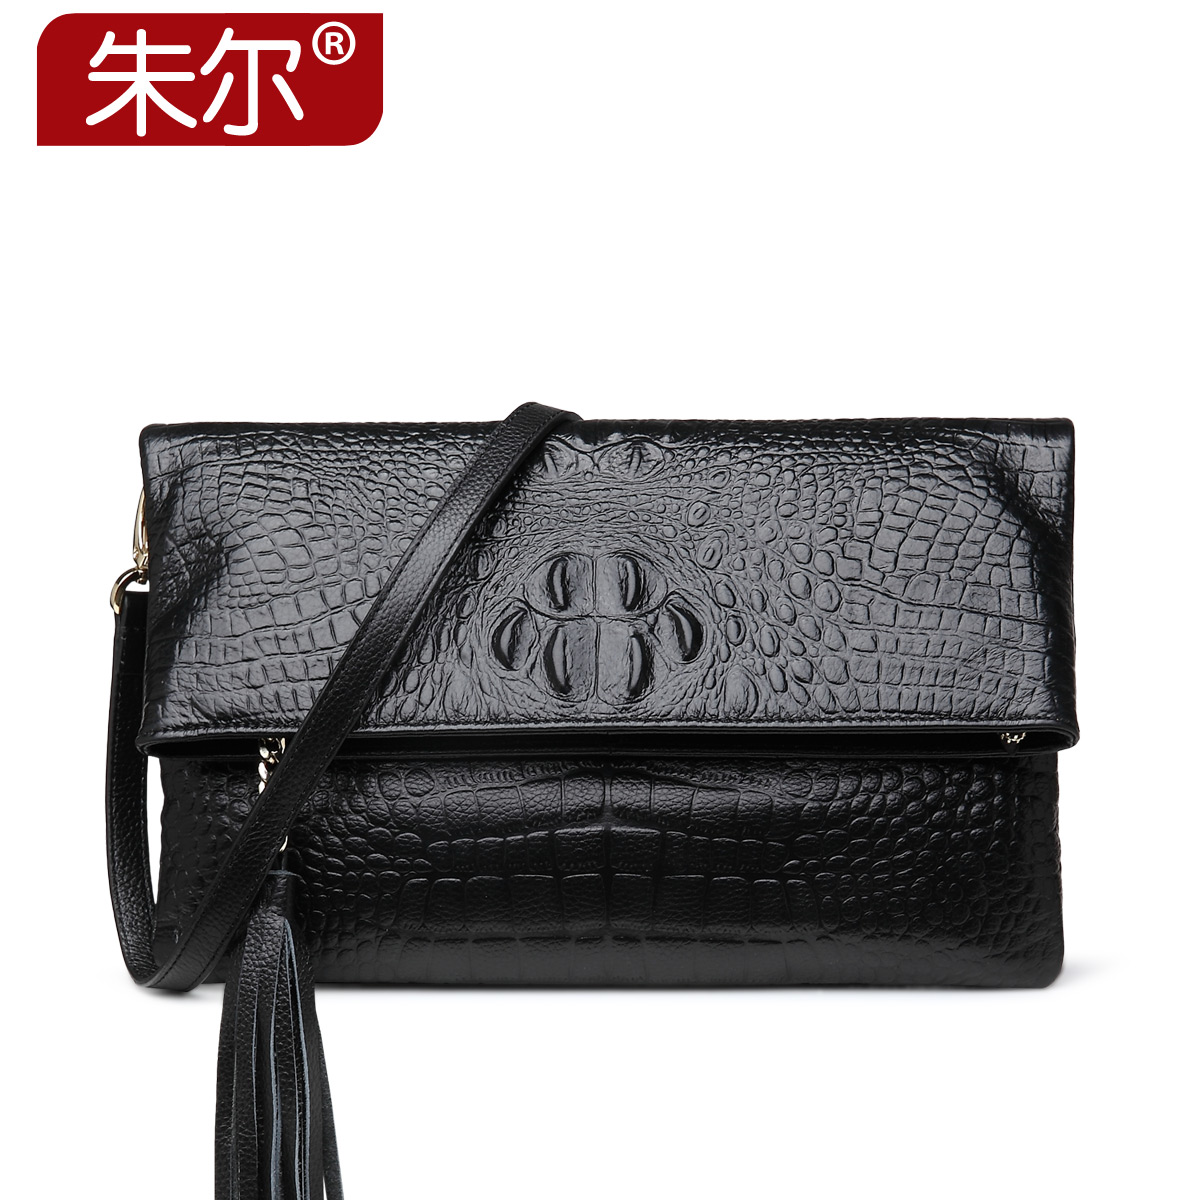 2015 women's fashion genuine leather handbag fashion for Crocodile shoulder bag small cross-body bag day clutch